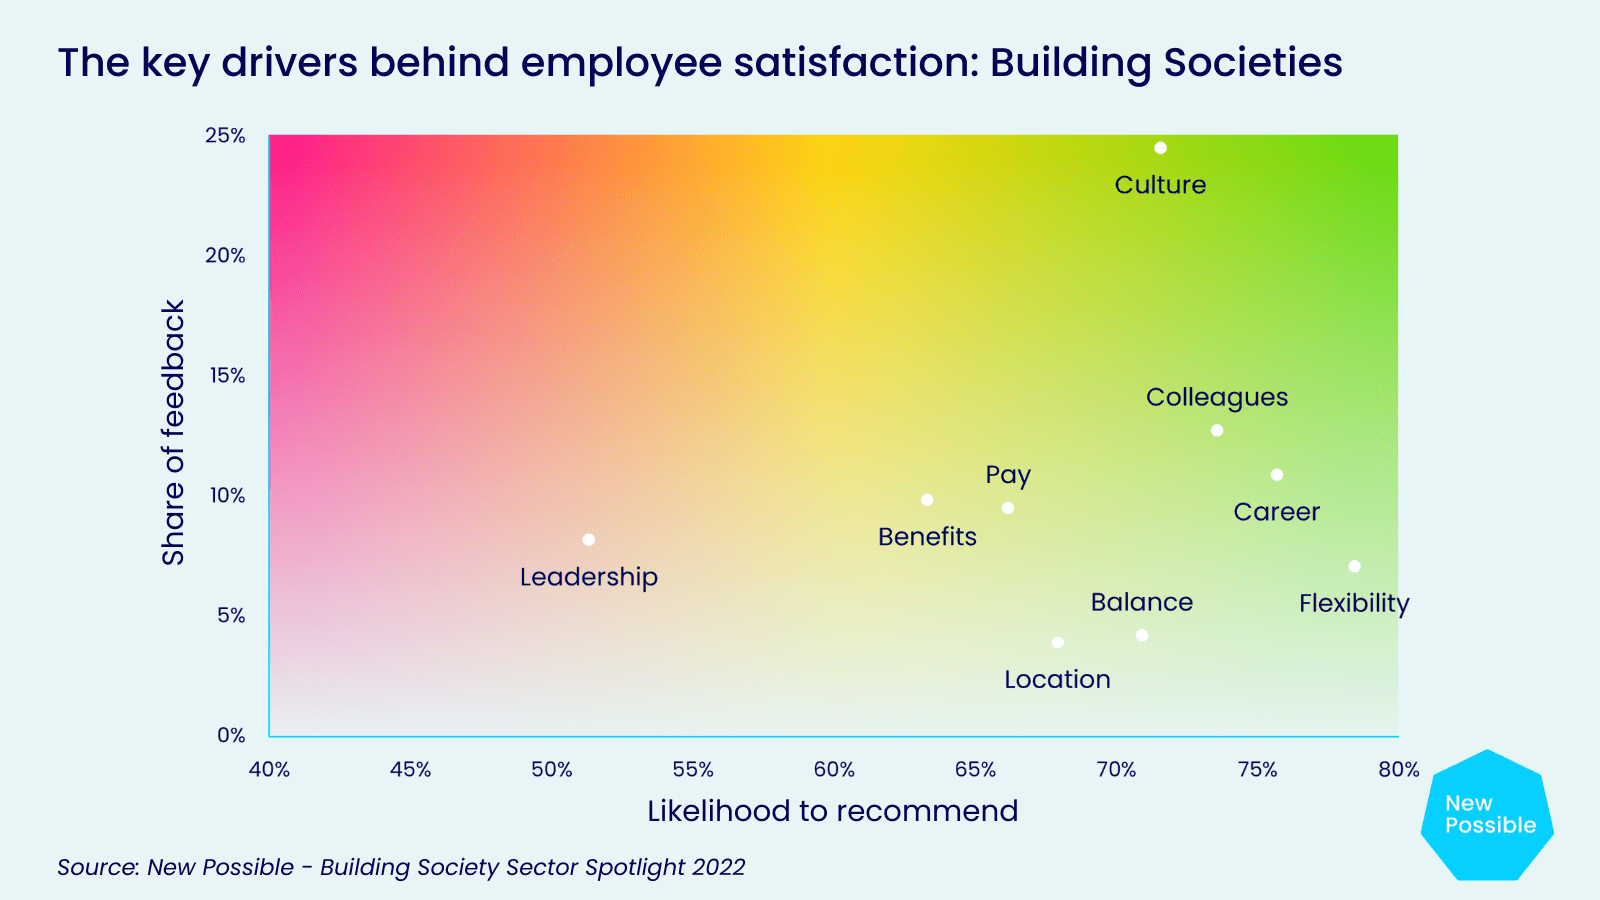 Key drivers behind employee satisfaction at building societies